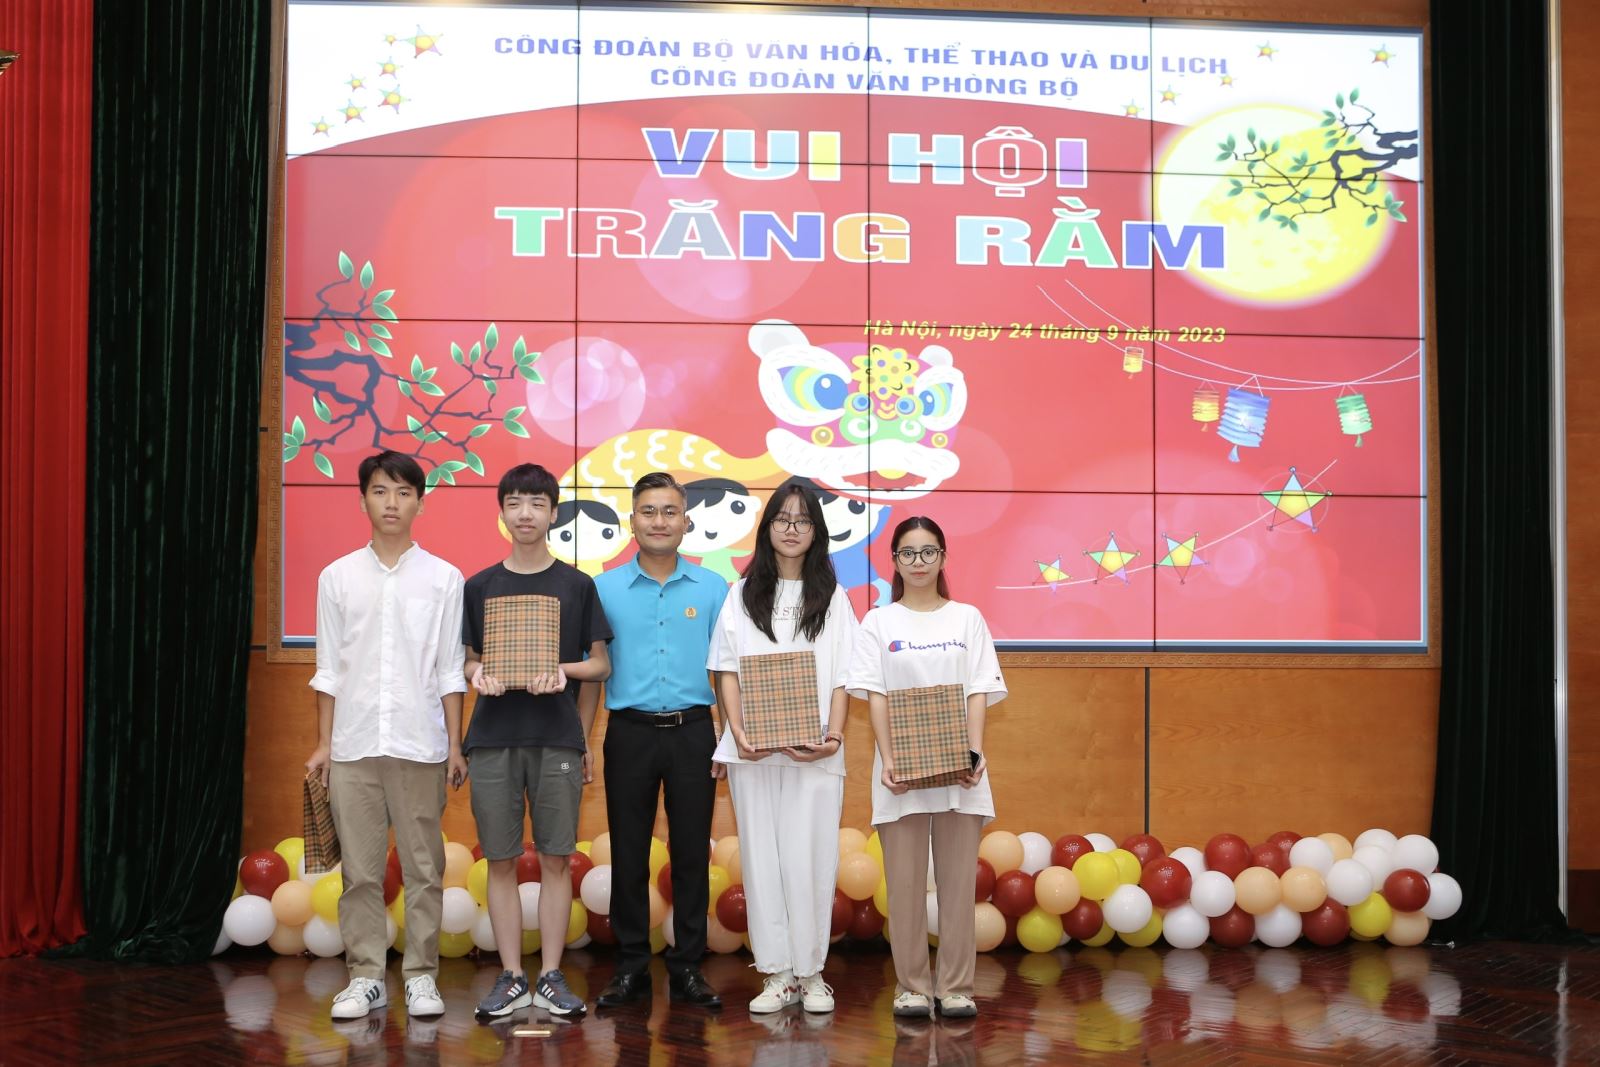 Công đoàn Văn phòng Bộ VHTTDL: Tổ chức Chương trình Vui hội Trăng Rằm 2023 và trao thưởng học sinh xuất sắc